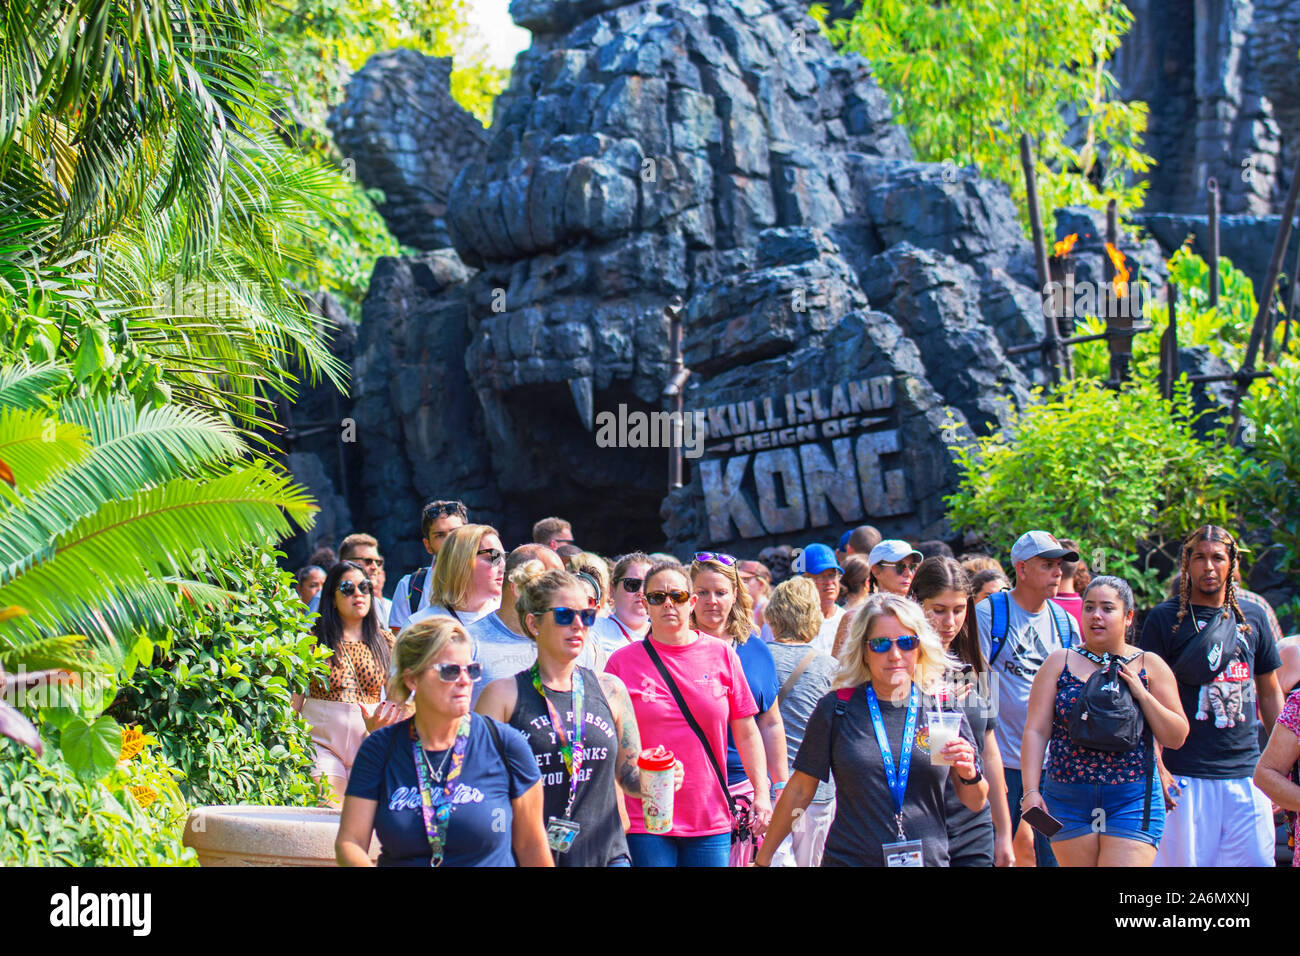 Skull Island Herrschaft von Kong Eingang zu Reiten, Menschen, Insel der Abenteuer, Universal Studios Resort, Orlando, Florida, USA Stockfoto